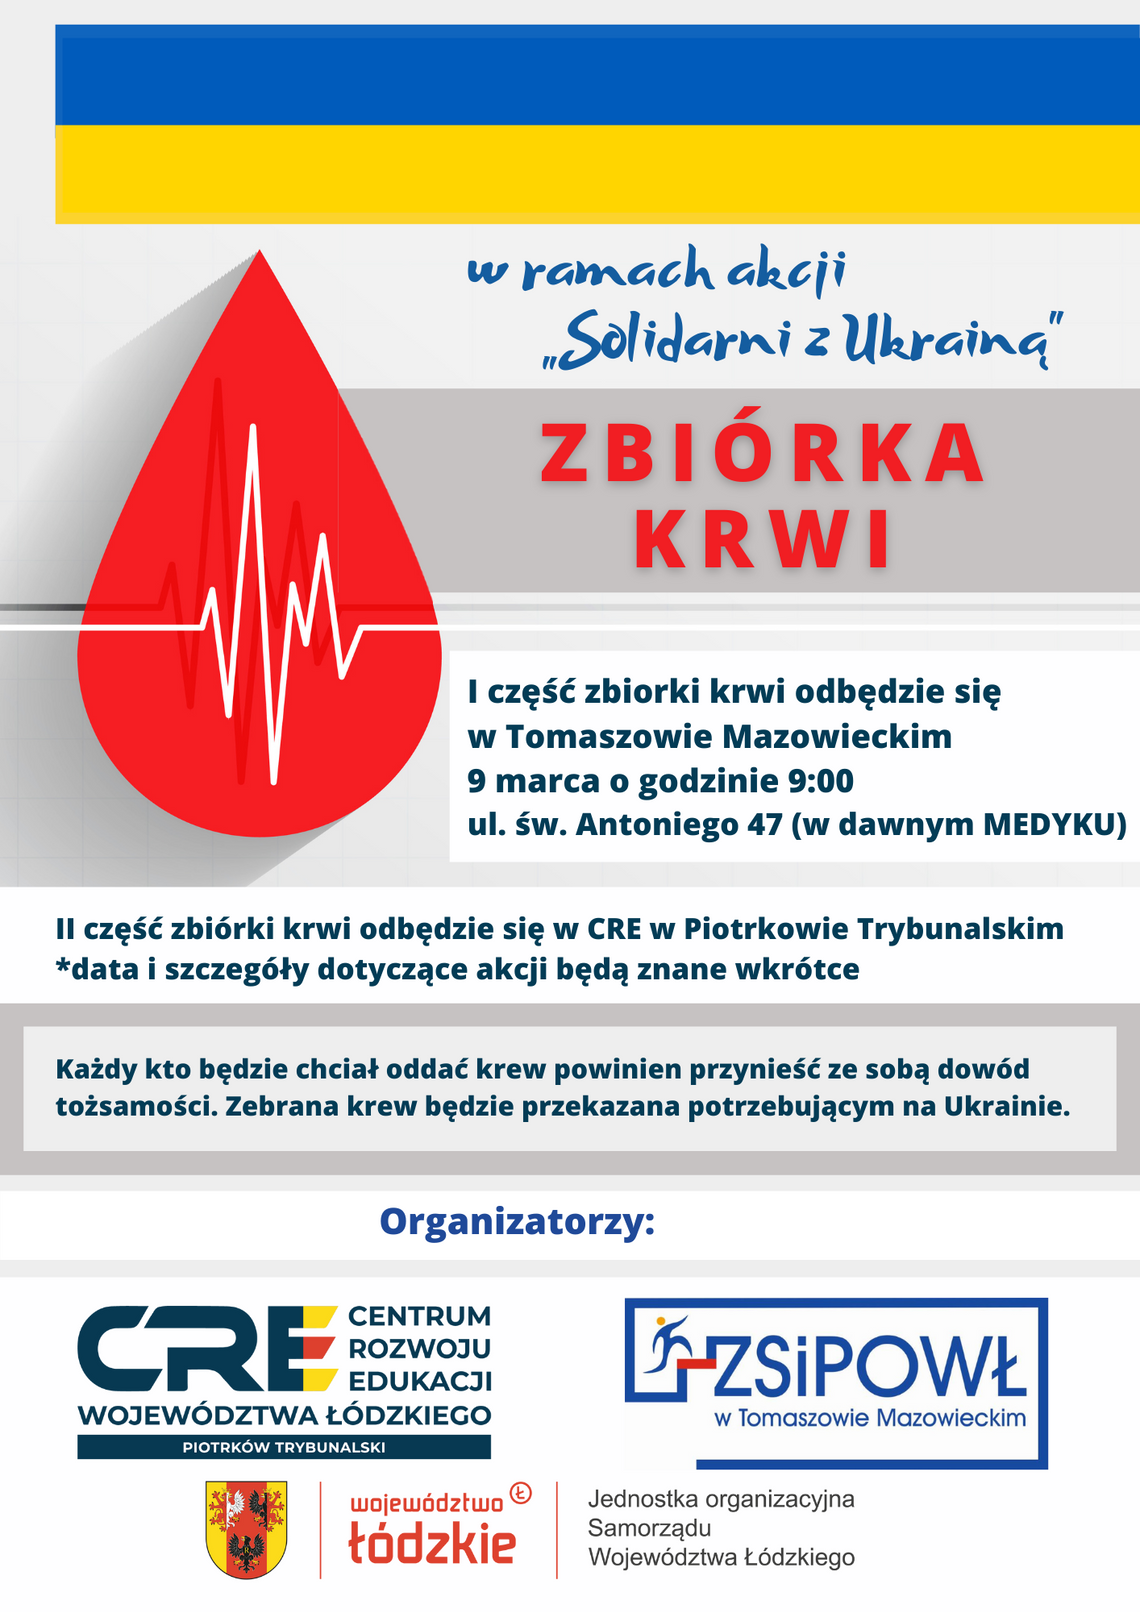 "Solidarni z Ukrainą" - zbiórka krwi w "Medyku".